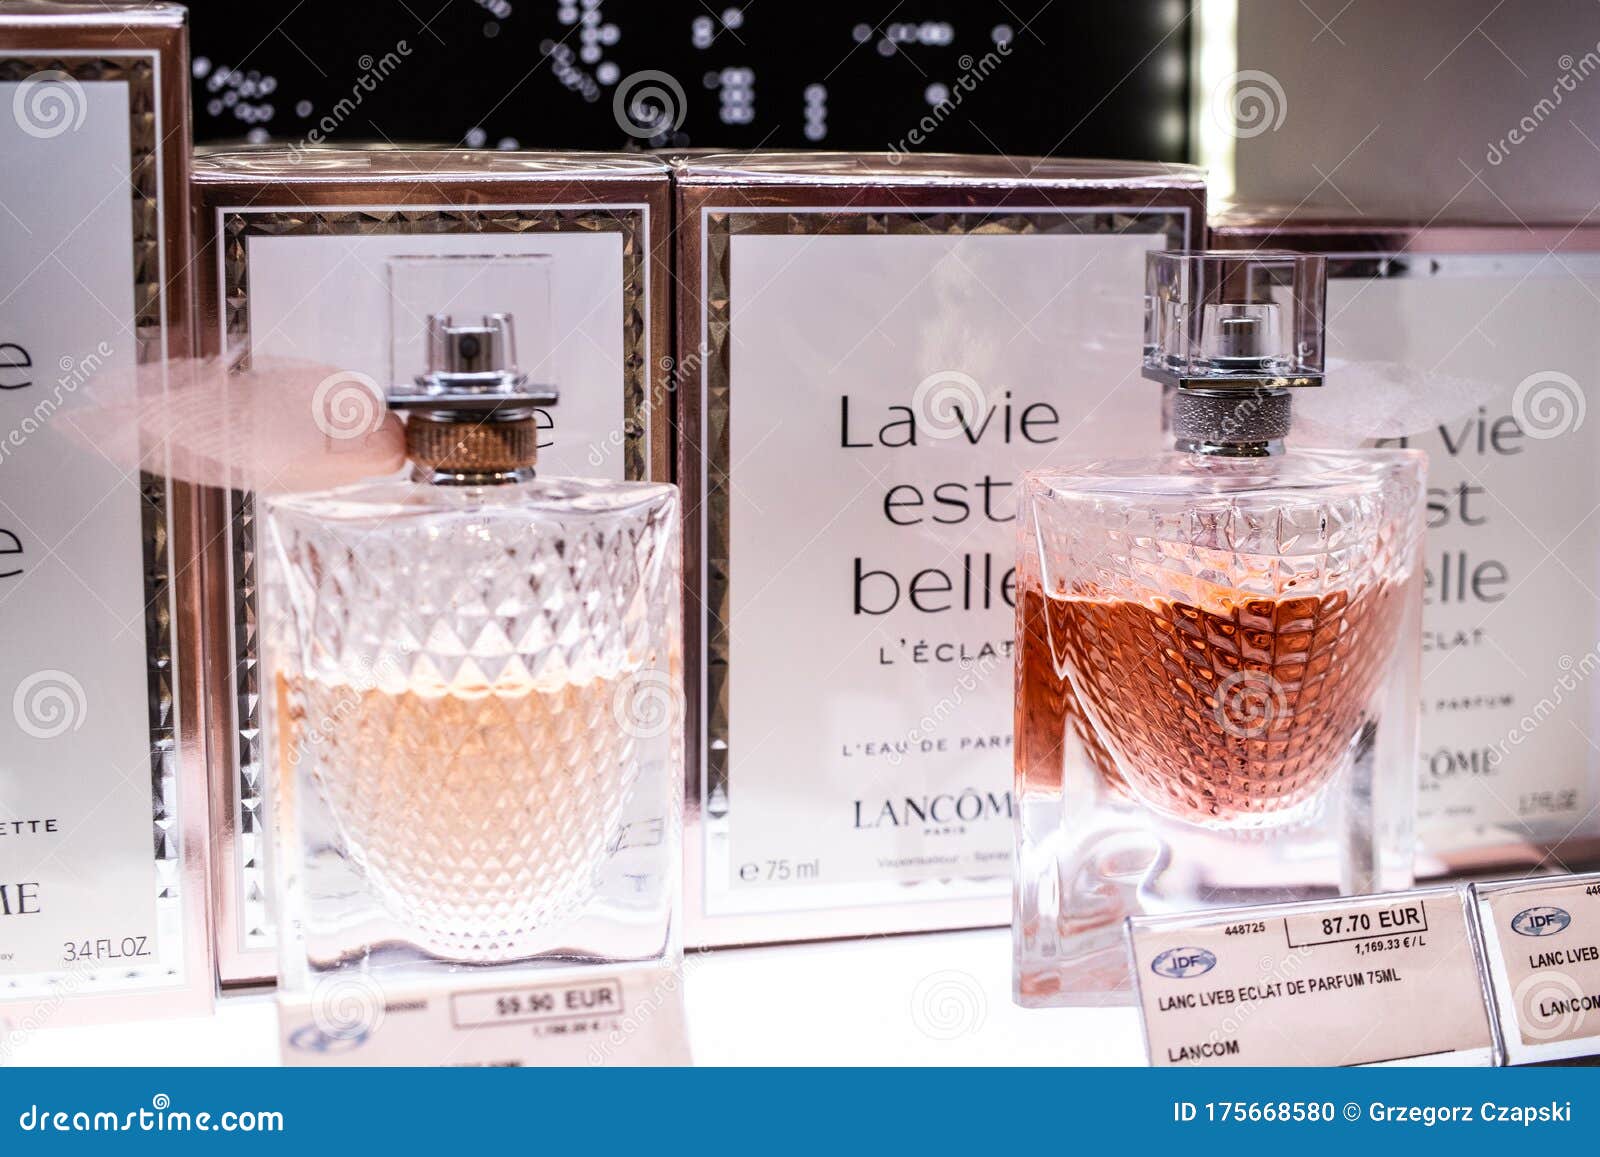 Lancome La Vie Est Belle En Rose Perfume on the Shop Display for Sale ...